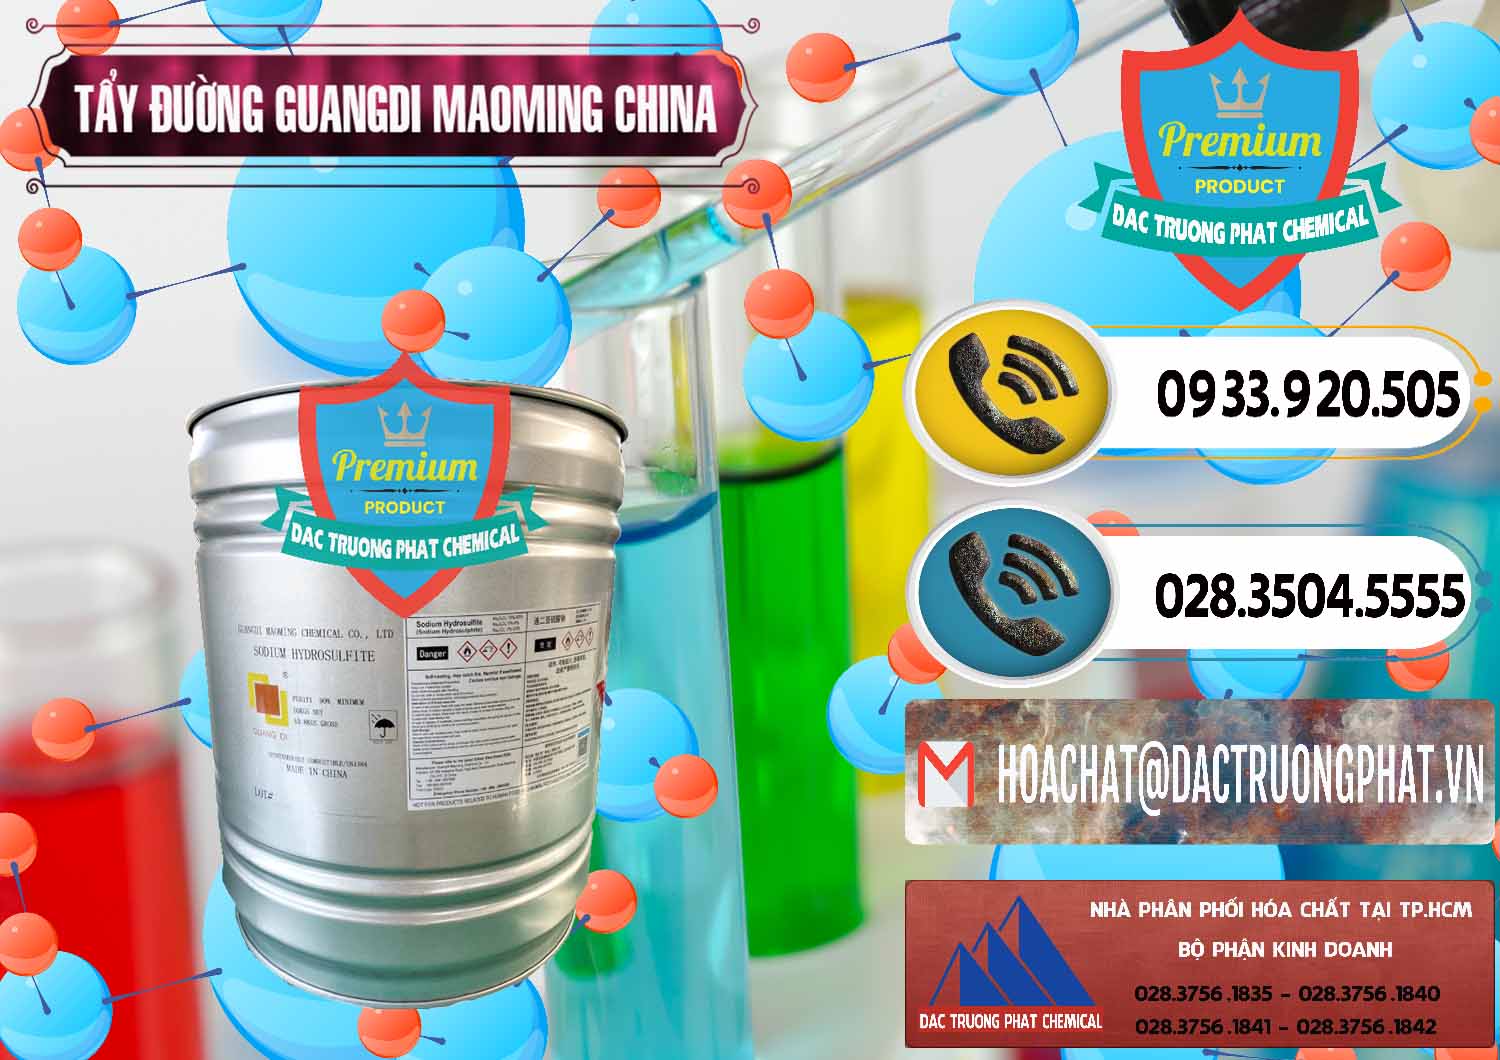 Công ty cung ứng ( bán ) Tẩy Đường - NA2S2O4 Guangdi Maoming Thùng Xám Trung Quốc China - 0402 - Nơi cung ứng và phân phối hóa chất tại TP.HCM - hoachatdetnhuom.vn